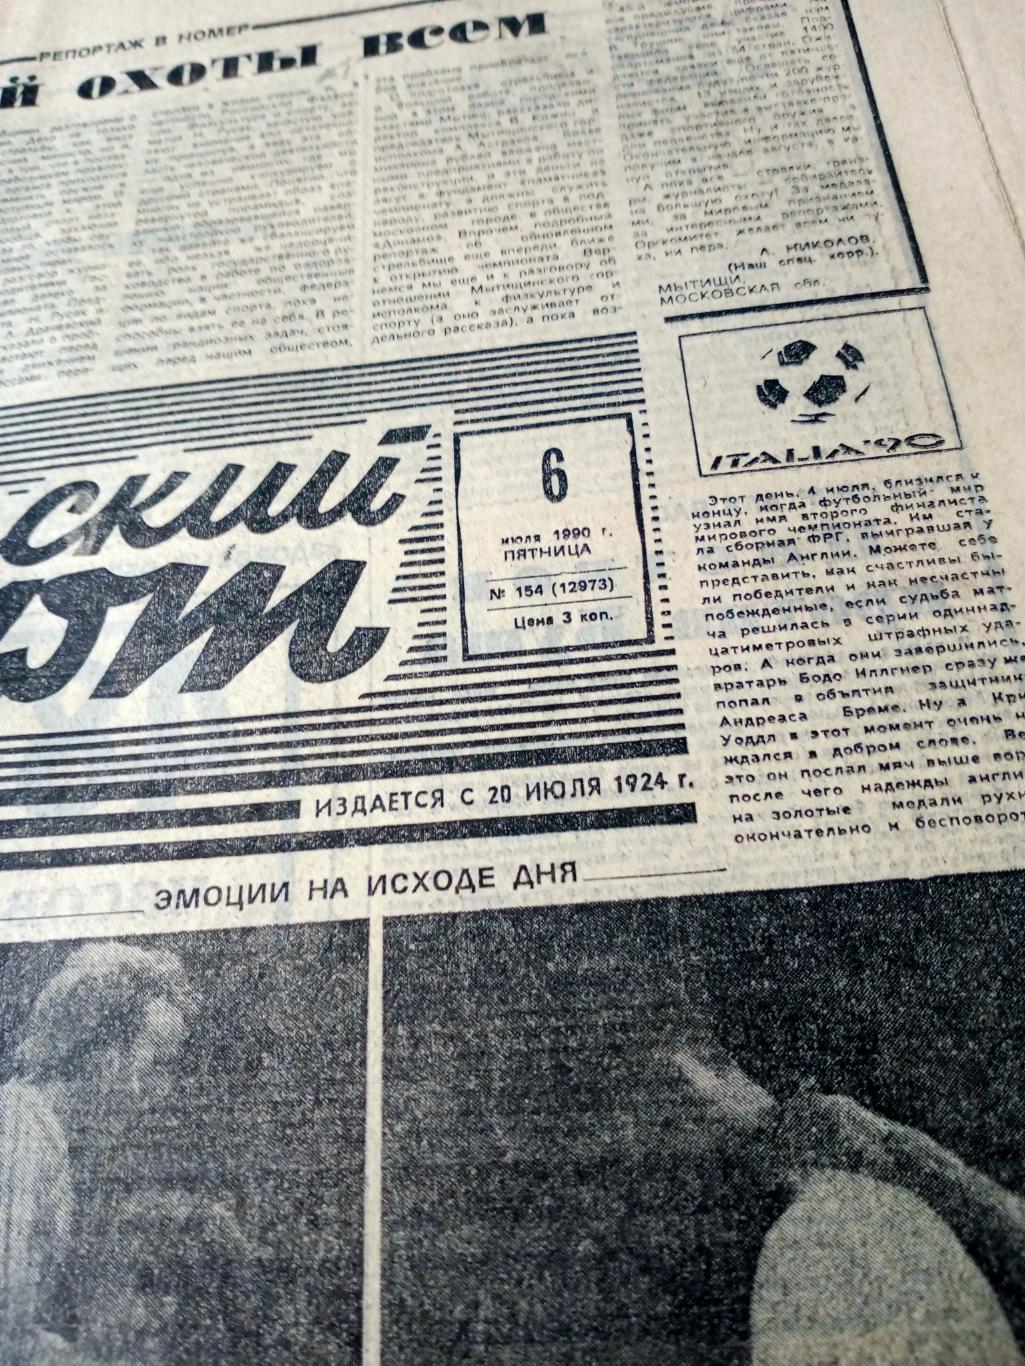 Италия-90. Советский спорт. 1990 год. 6 июля